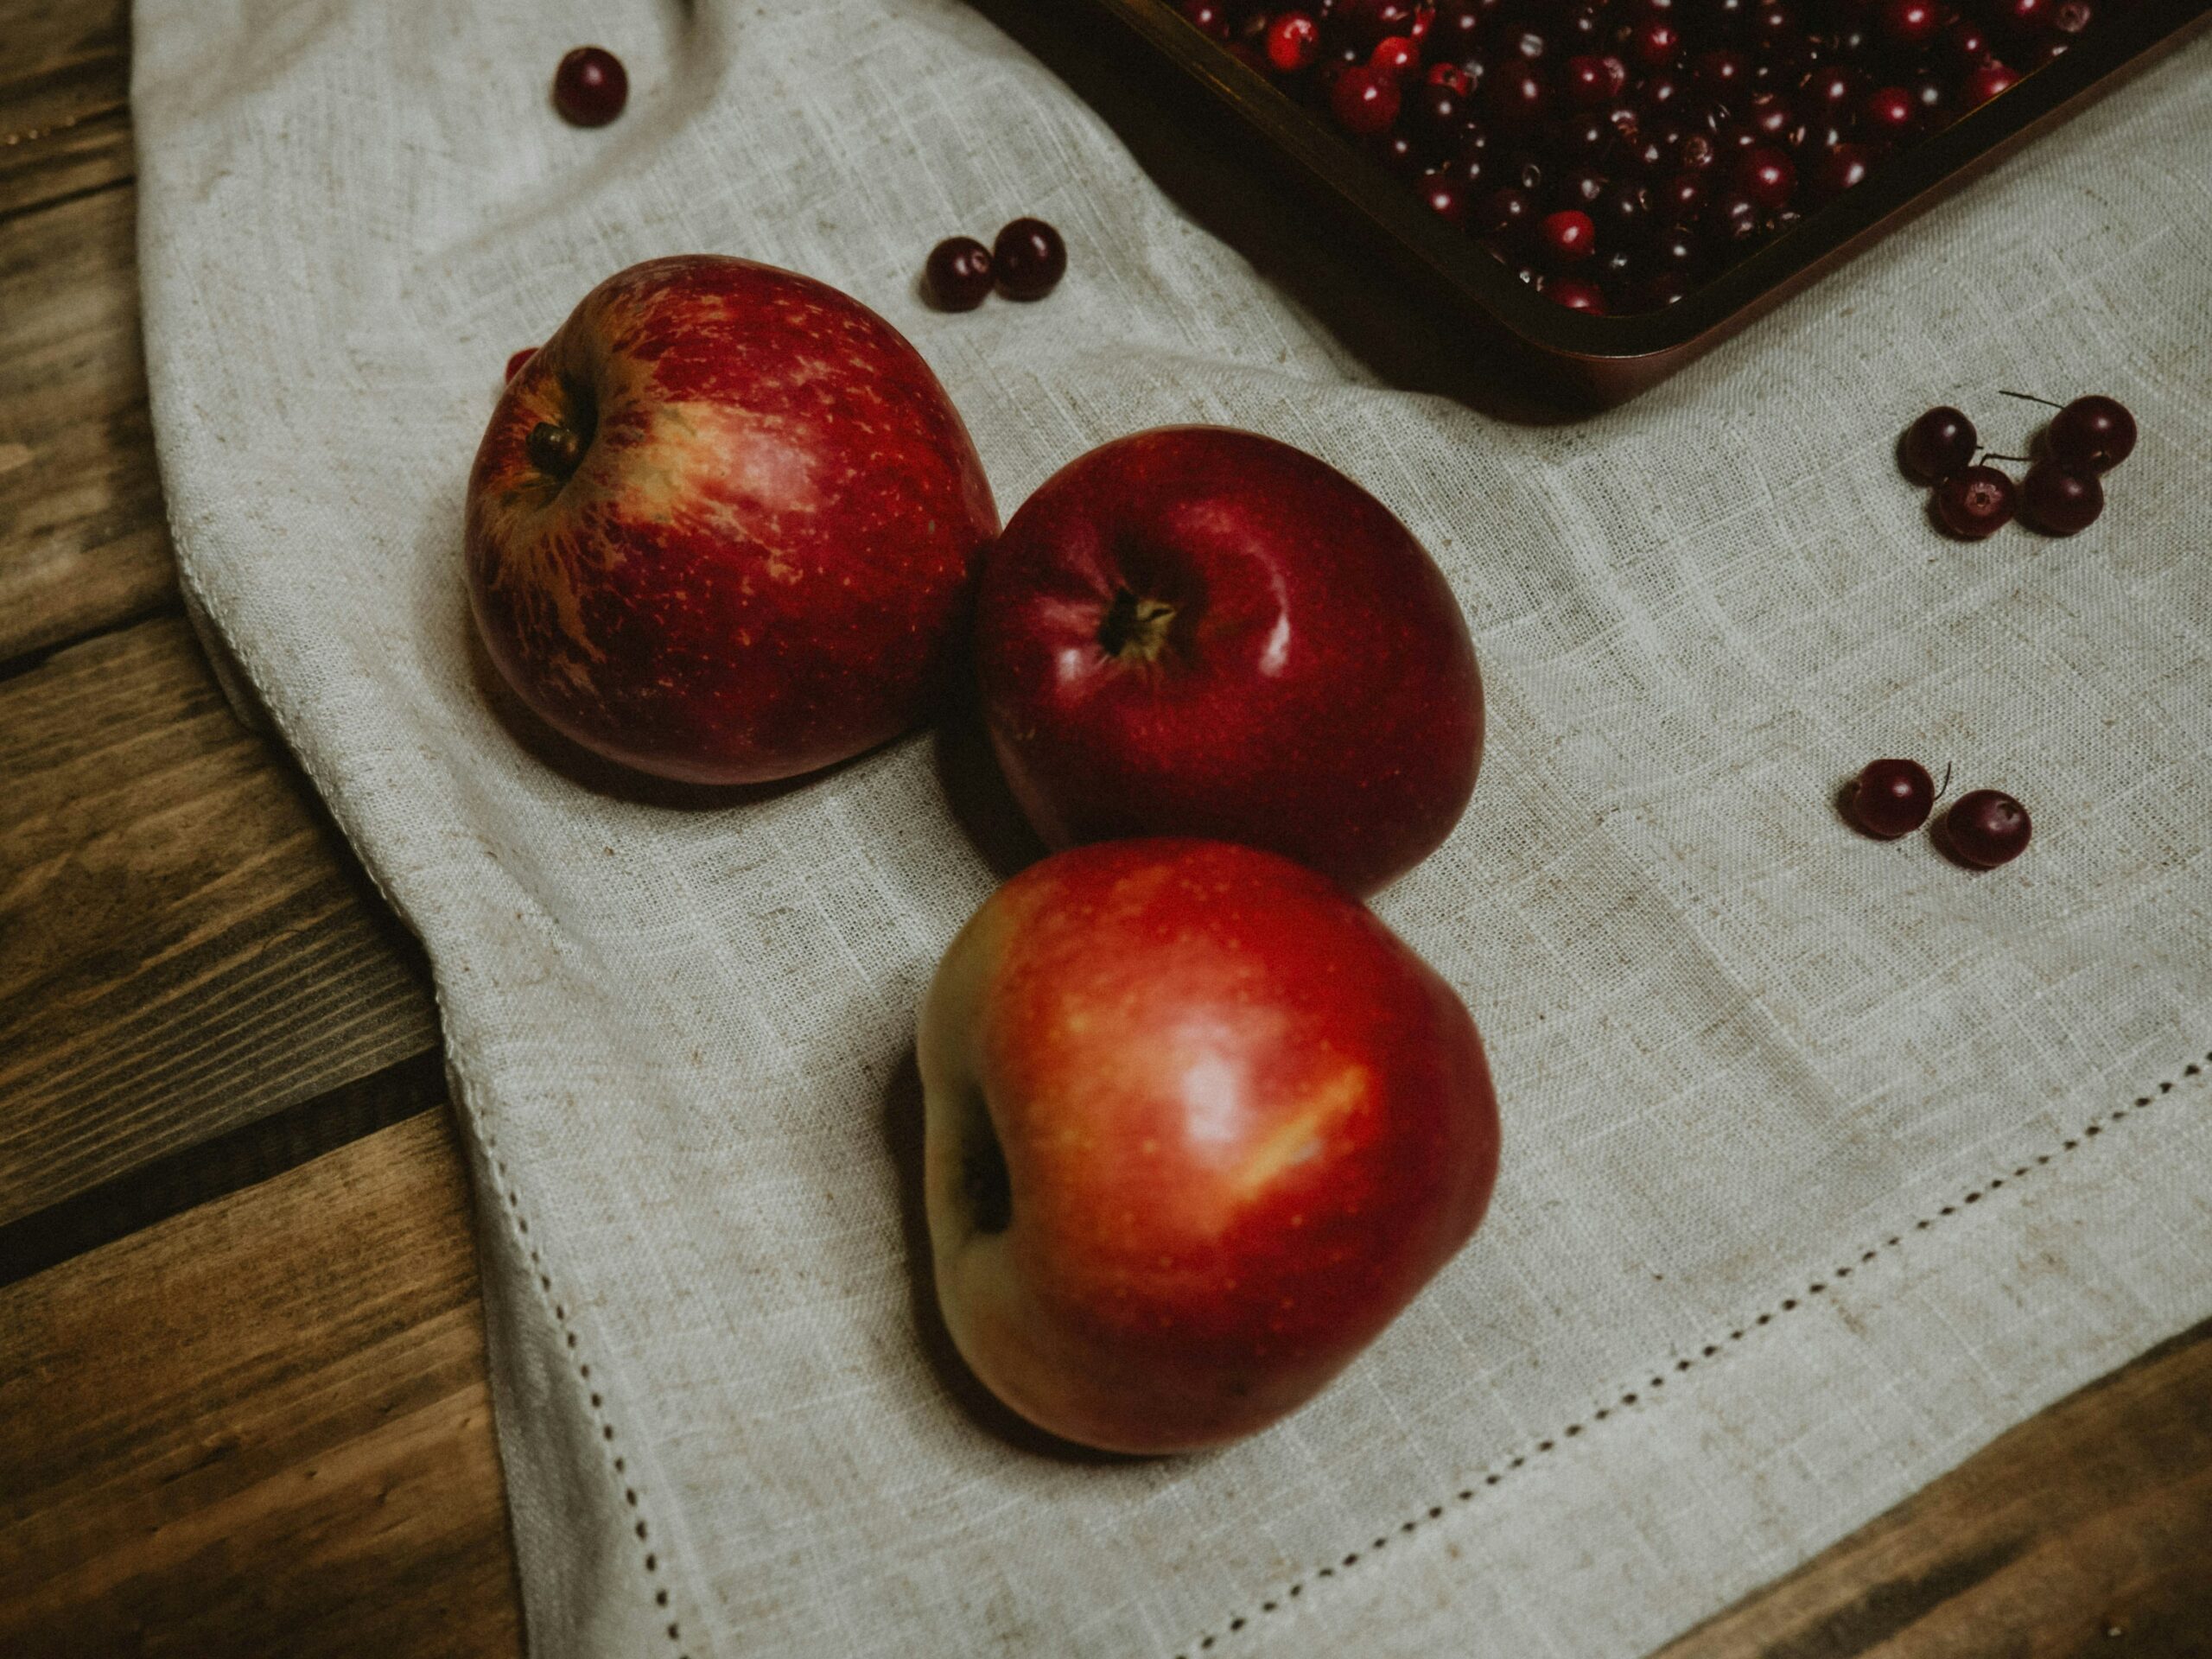 découvrez une délicieuse recette de tarte aux pommes, parfaite pour toutes les occasions. apprenez à préparer une apple pie maison avec notre recette simple et savoureuse.